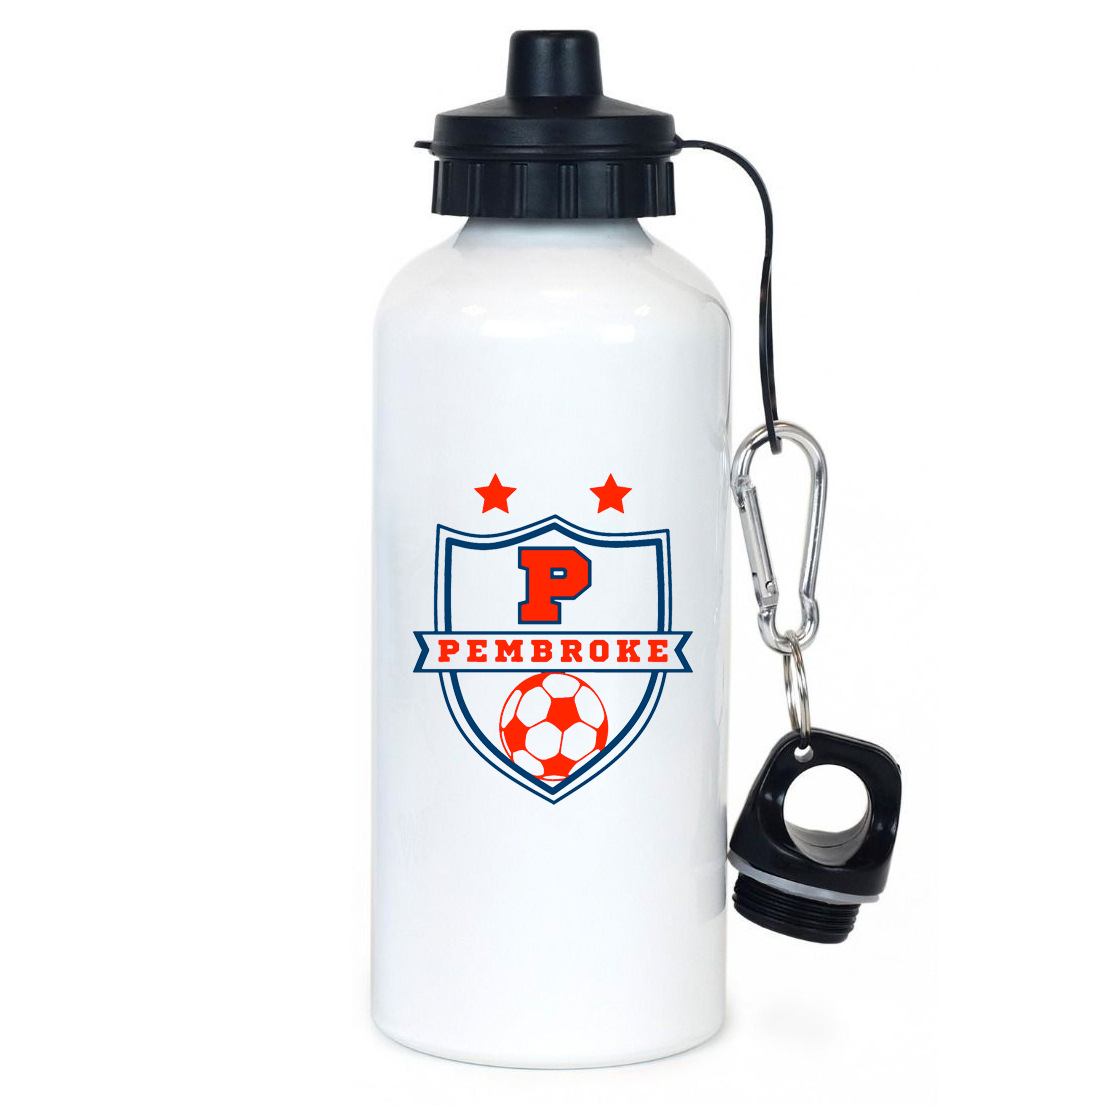 Pembroke Soccer Team Water Bottle